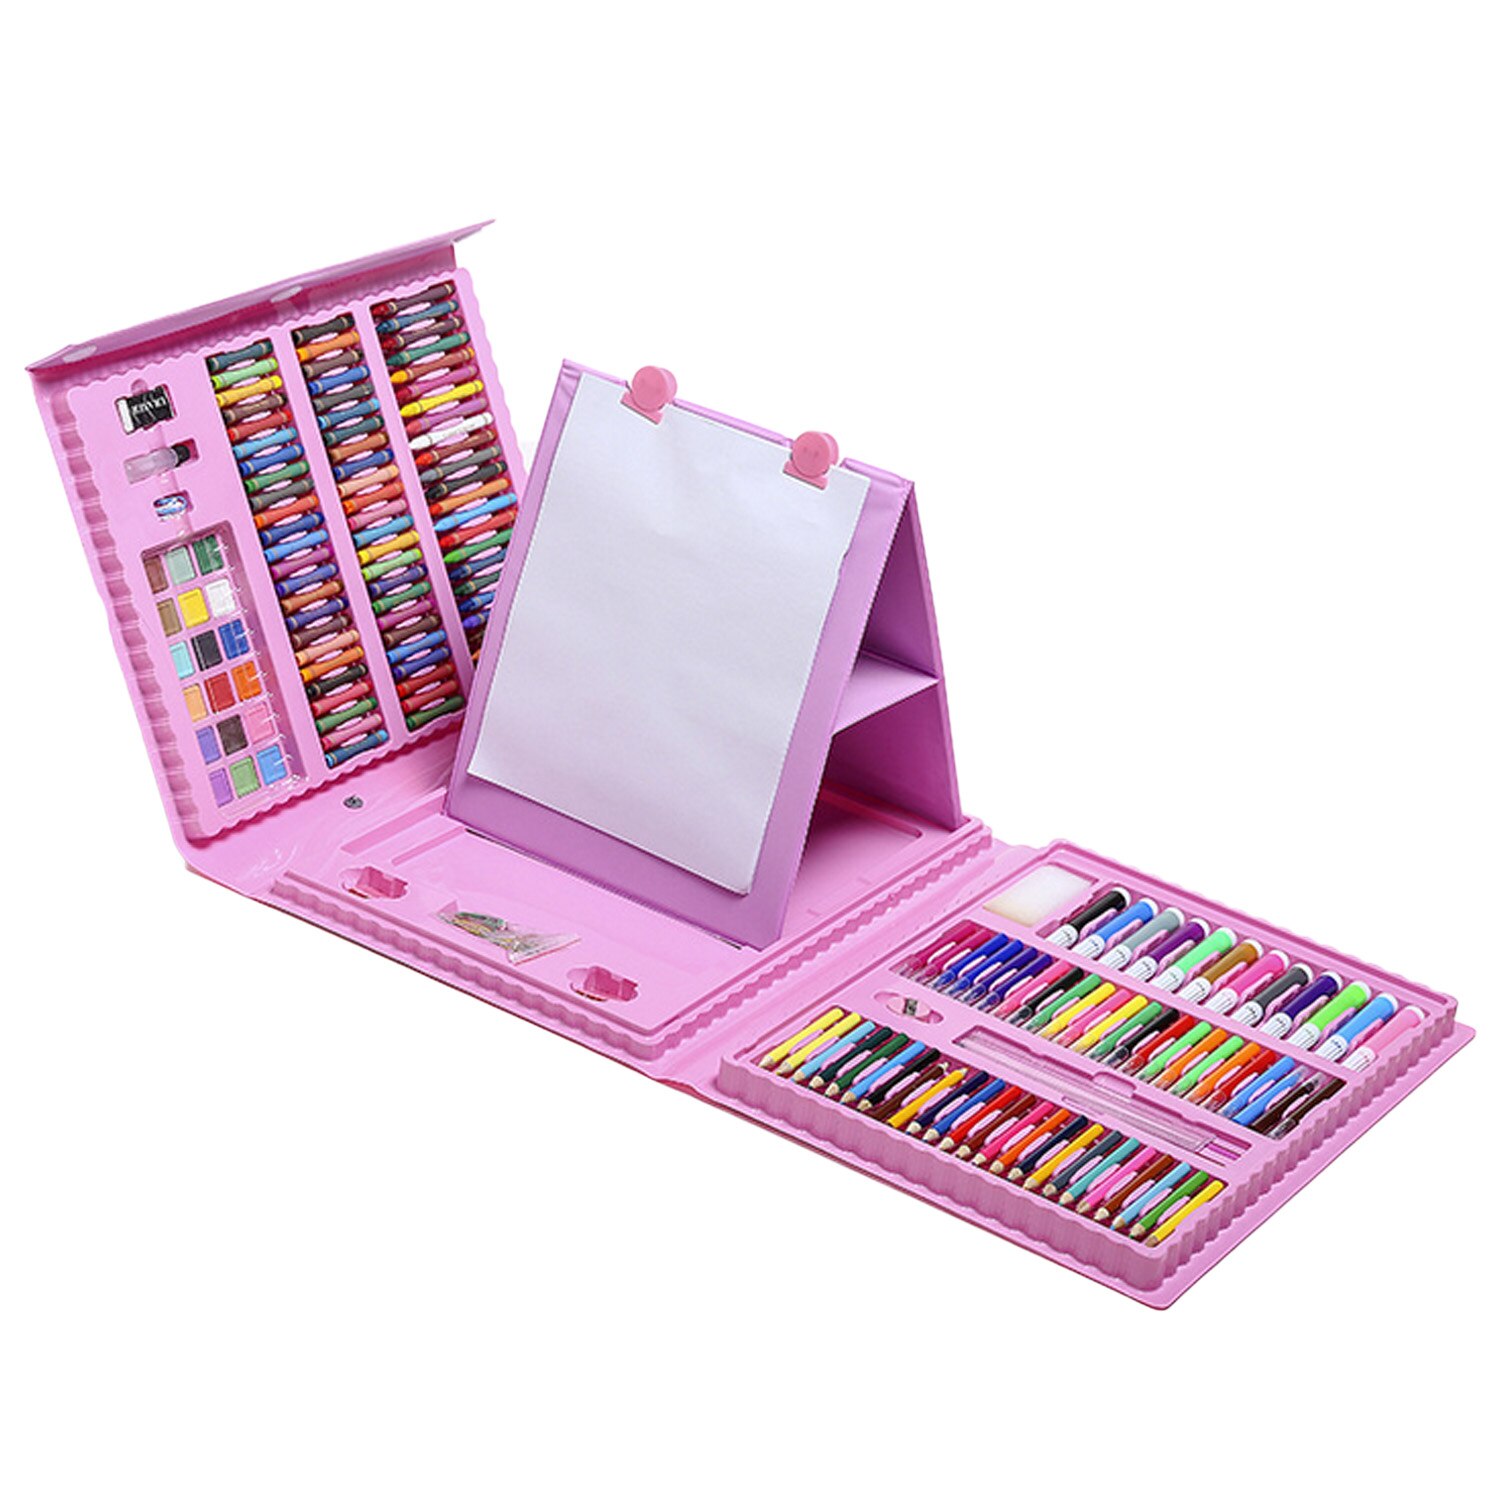 208 stk børn børn maleri tegneværktøj sæt med farvede blyanter tuschblyanter farveblyanter til hjemmeskole børnehaveforsyninger: Lyserød